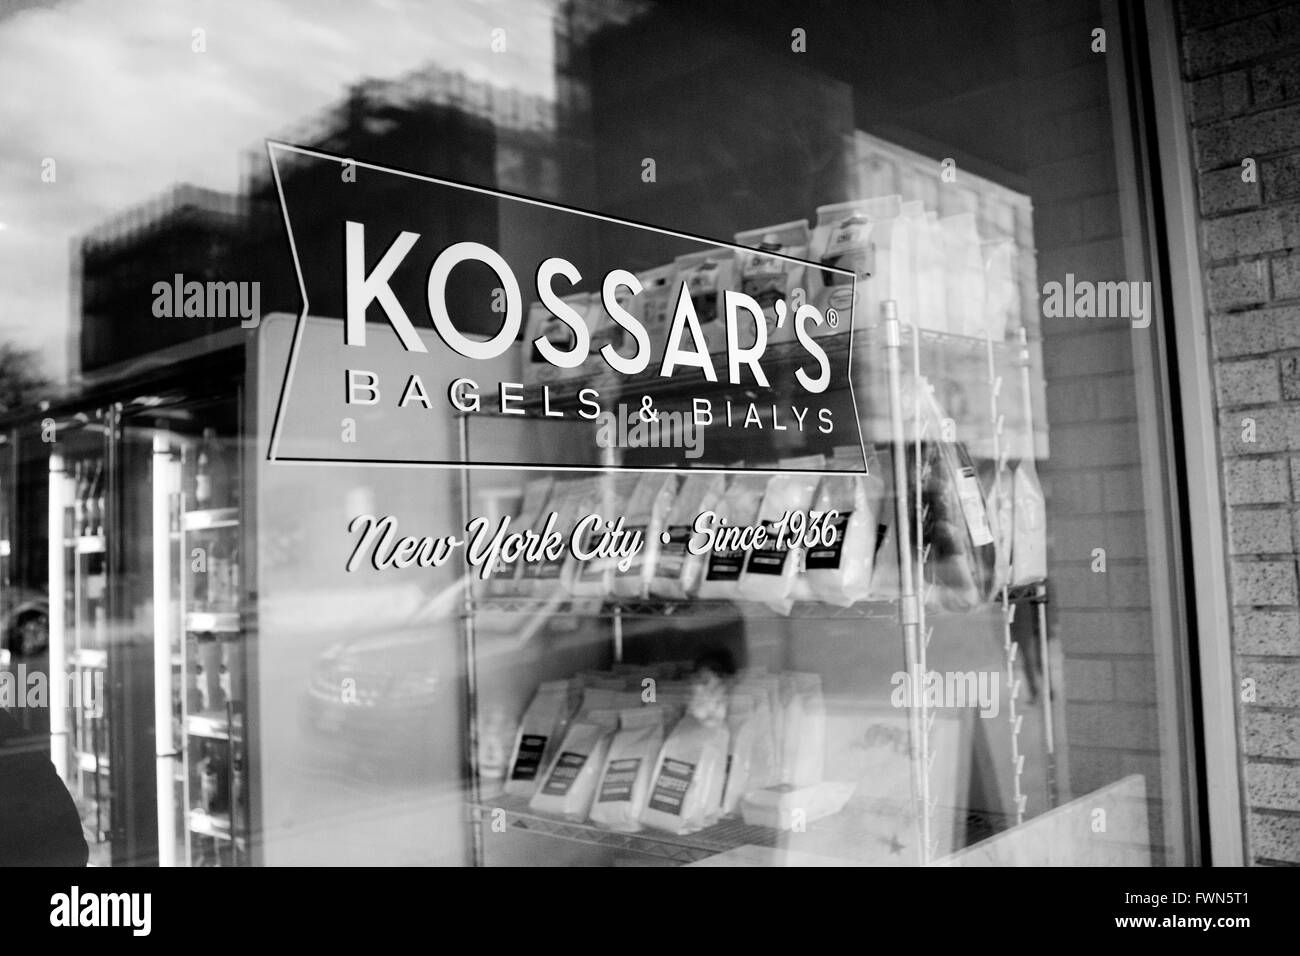 À Kossar's, ils ont été leur cuisson bialys légendaire depuis 1936, et maintenant la plus ancienne boulangerie de Bialy aux ETATS UNIS Banque D'Images